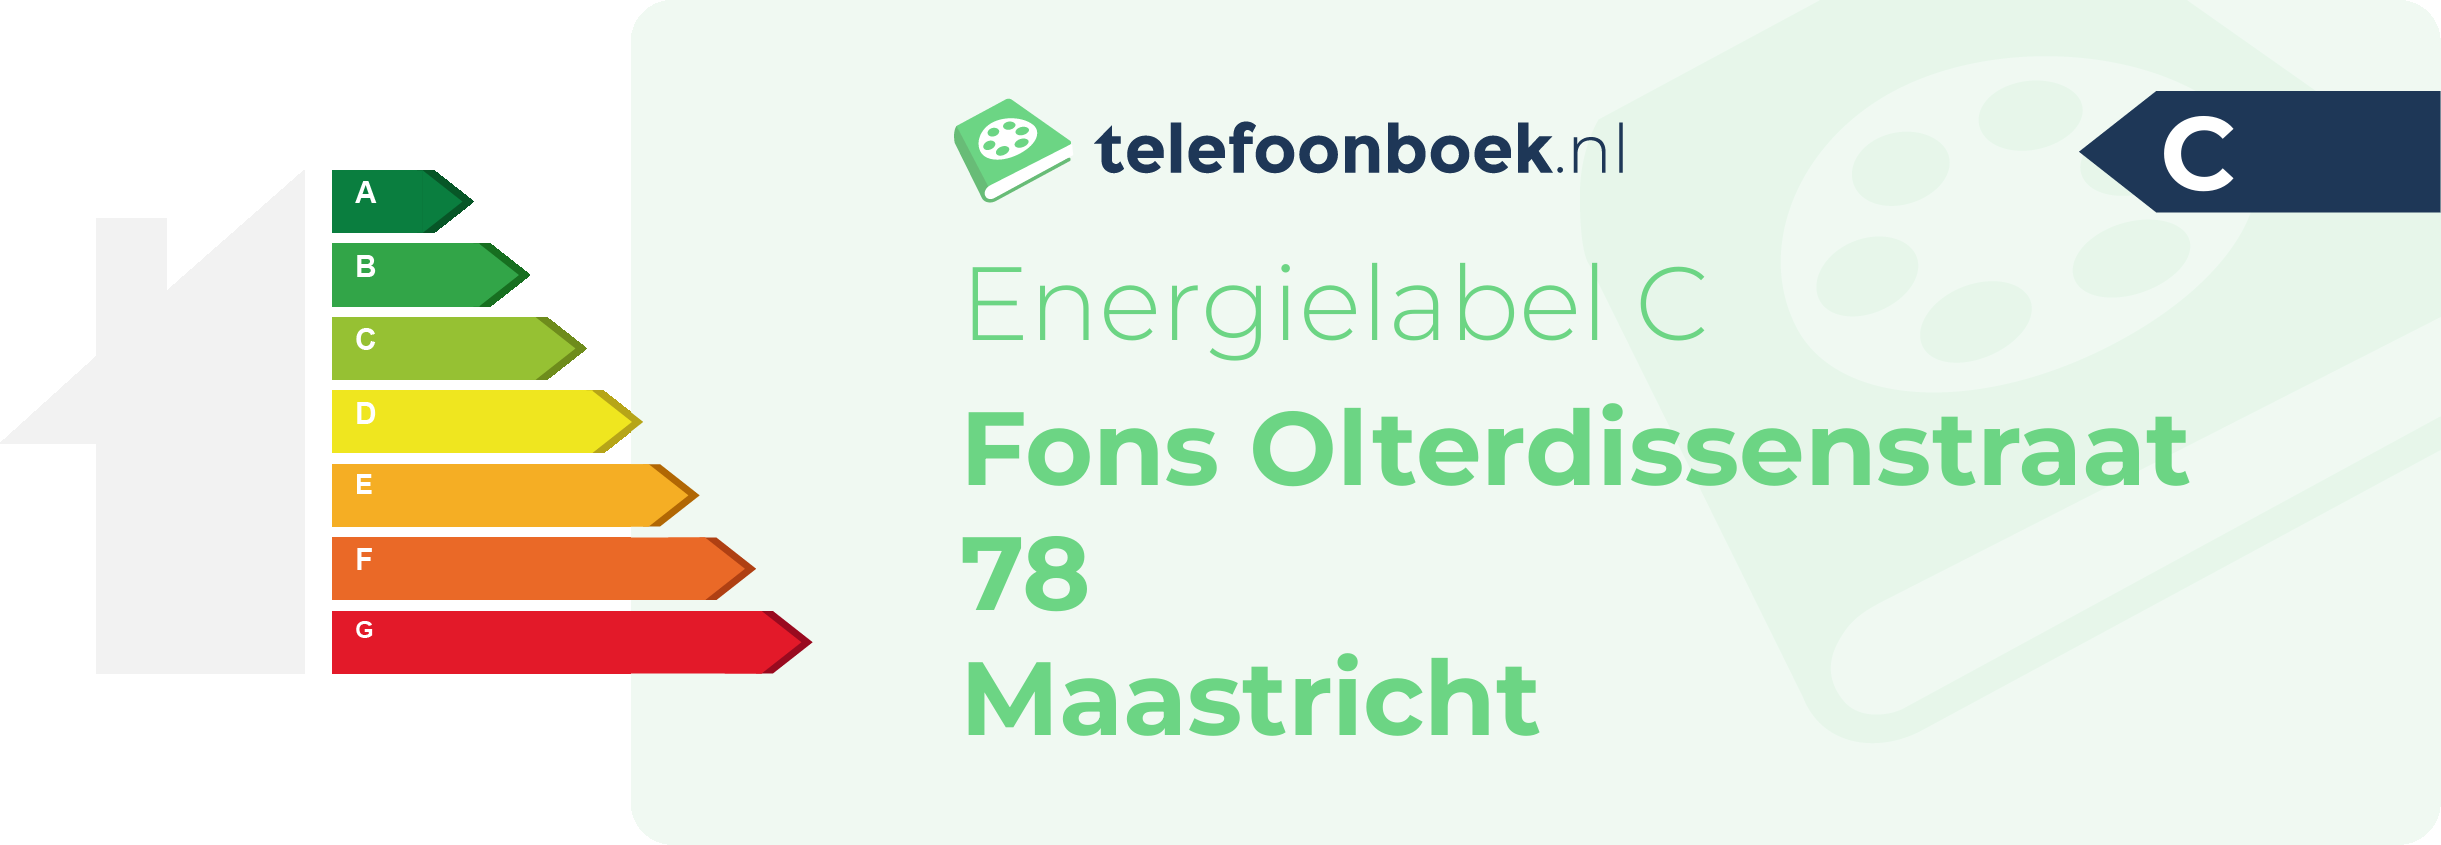 Energielabel Fons Olterdissenstraat 78 Maastricht